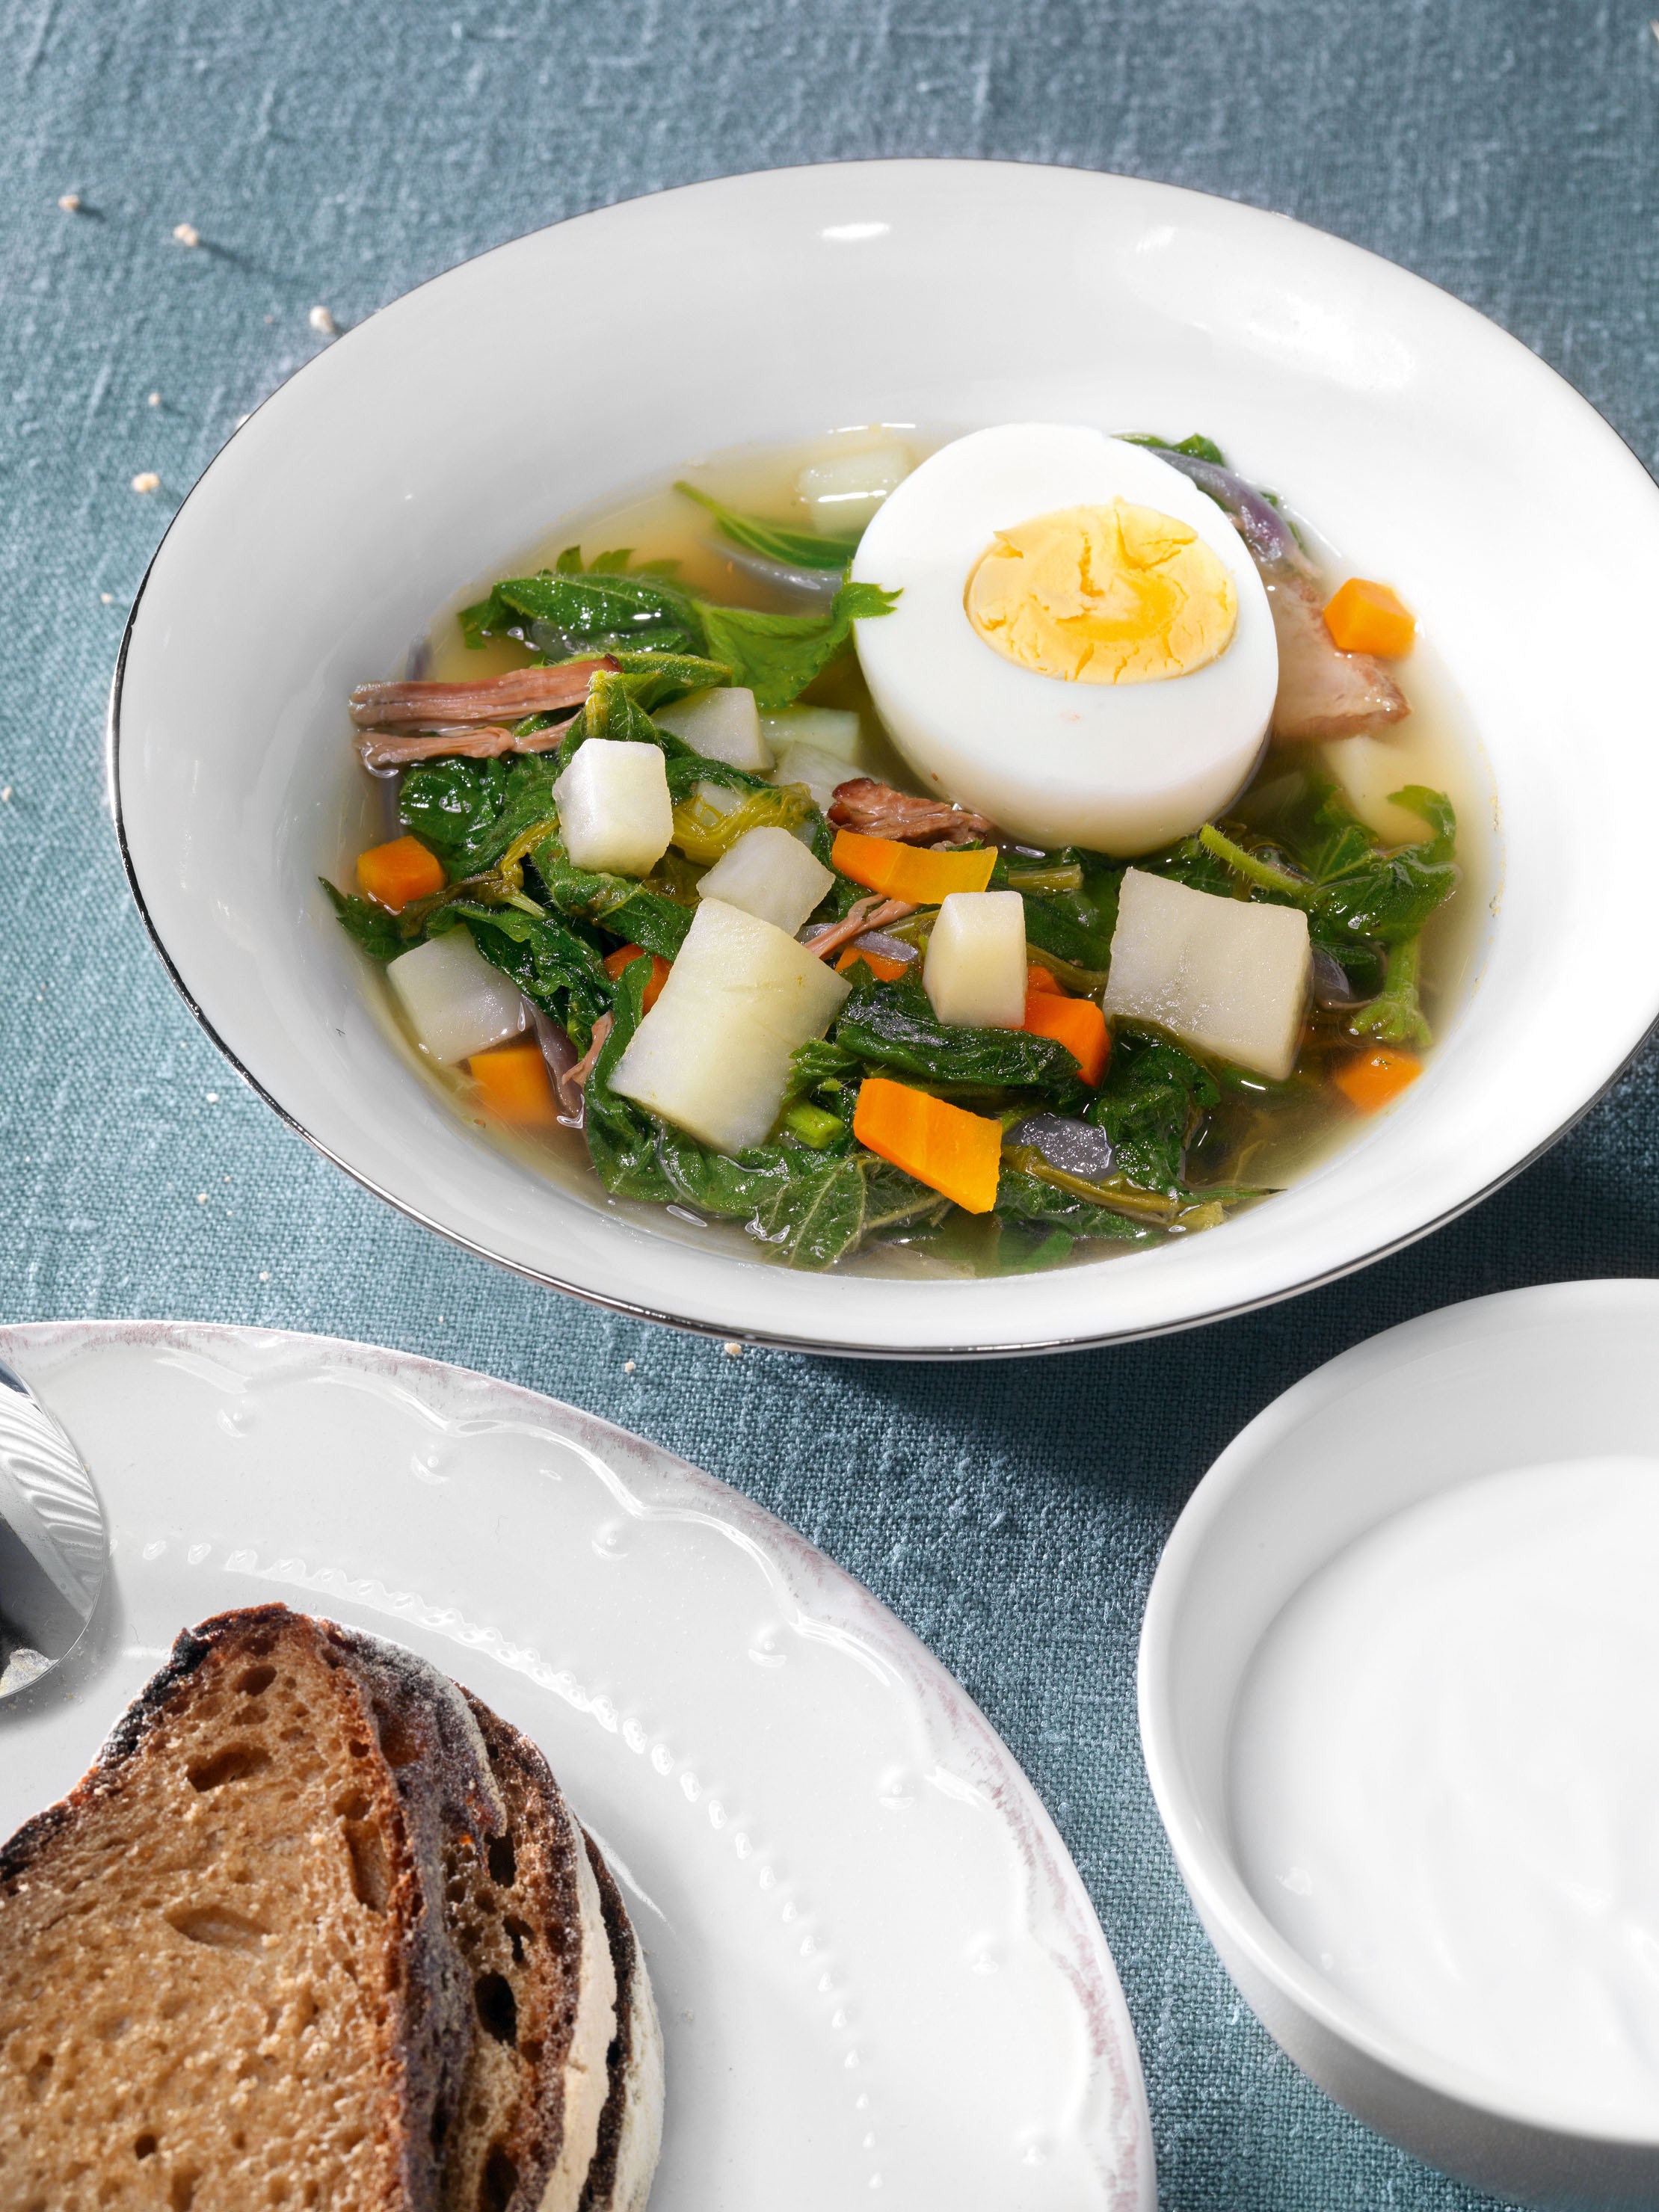 Вкусный рецепт супа с крапивой и щавелем кулинарное удовольствие из природных лекарей